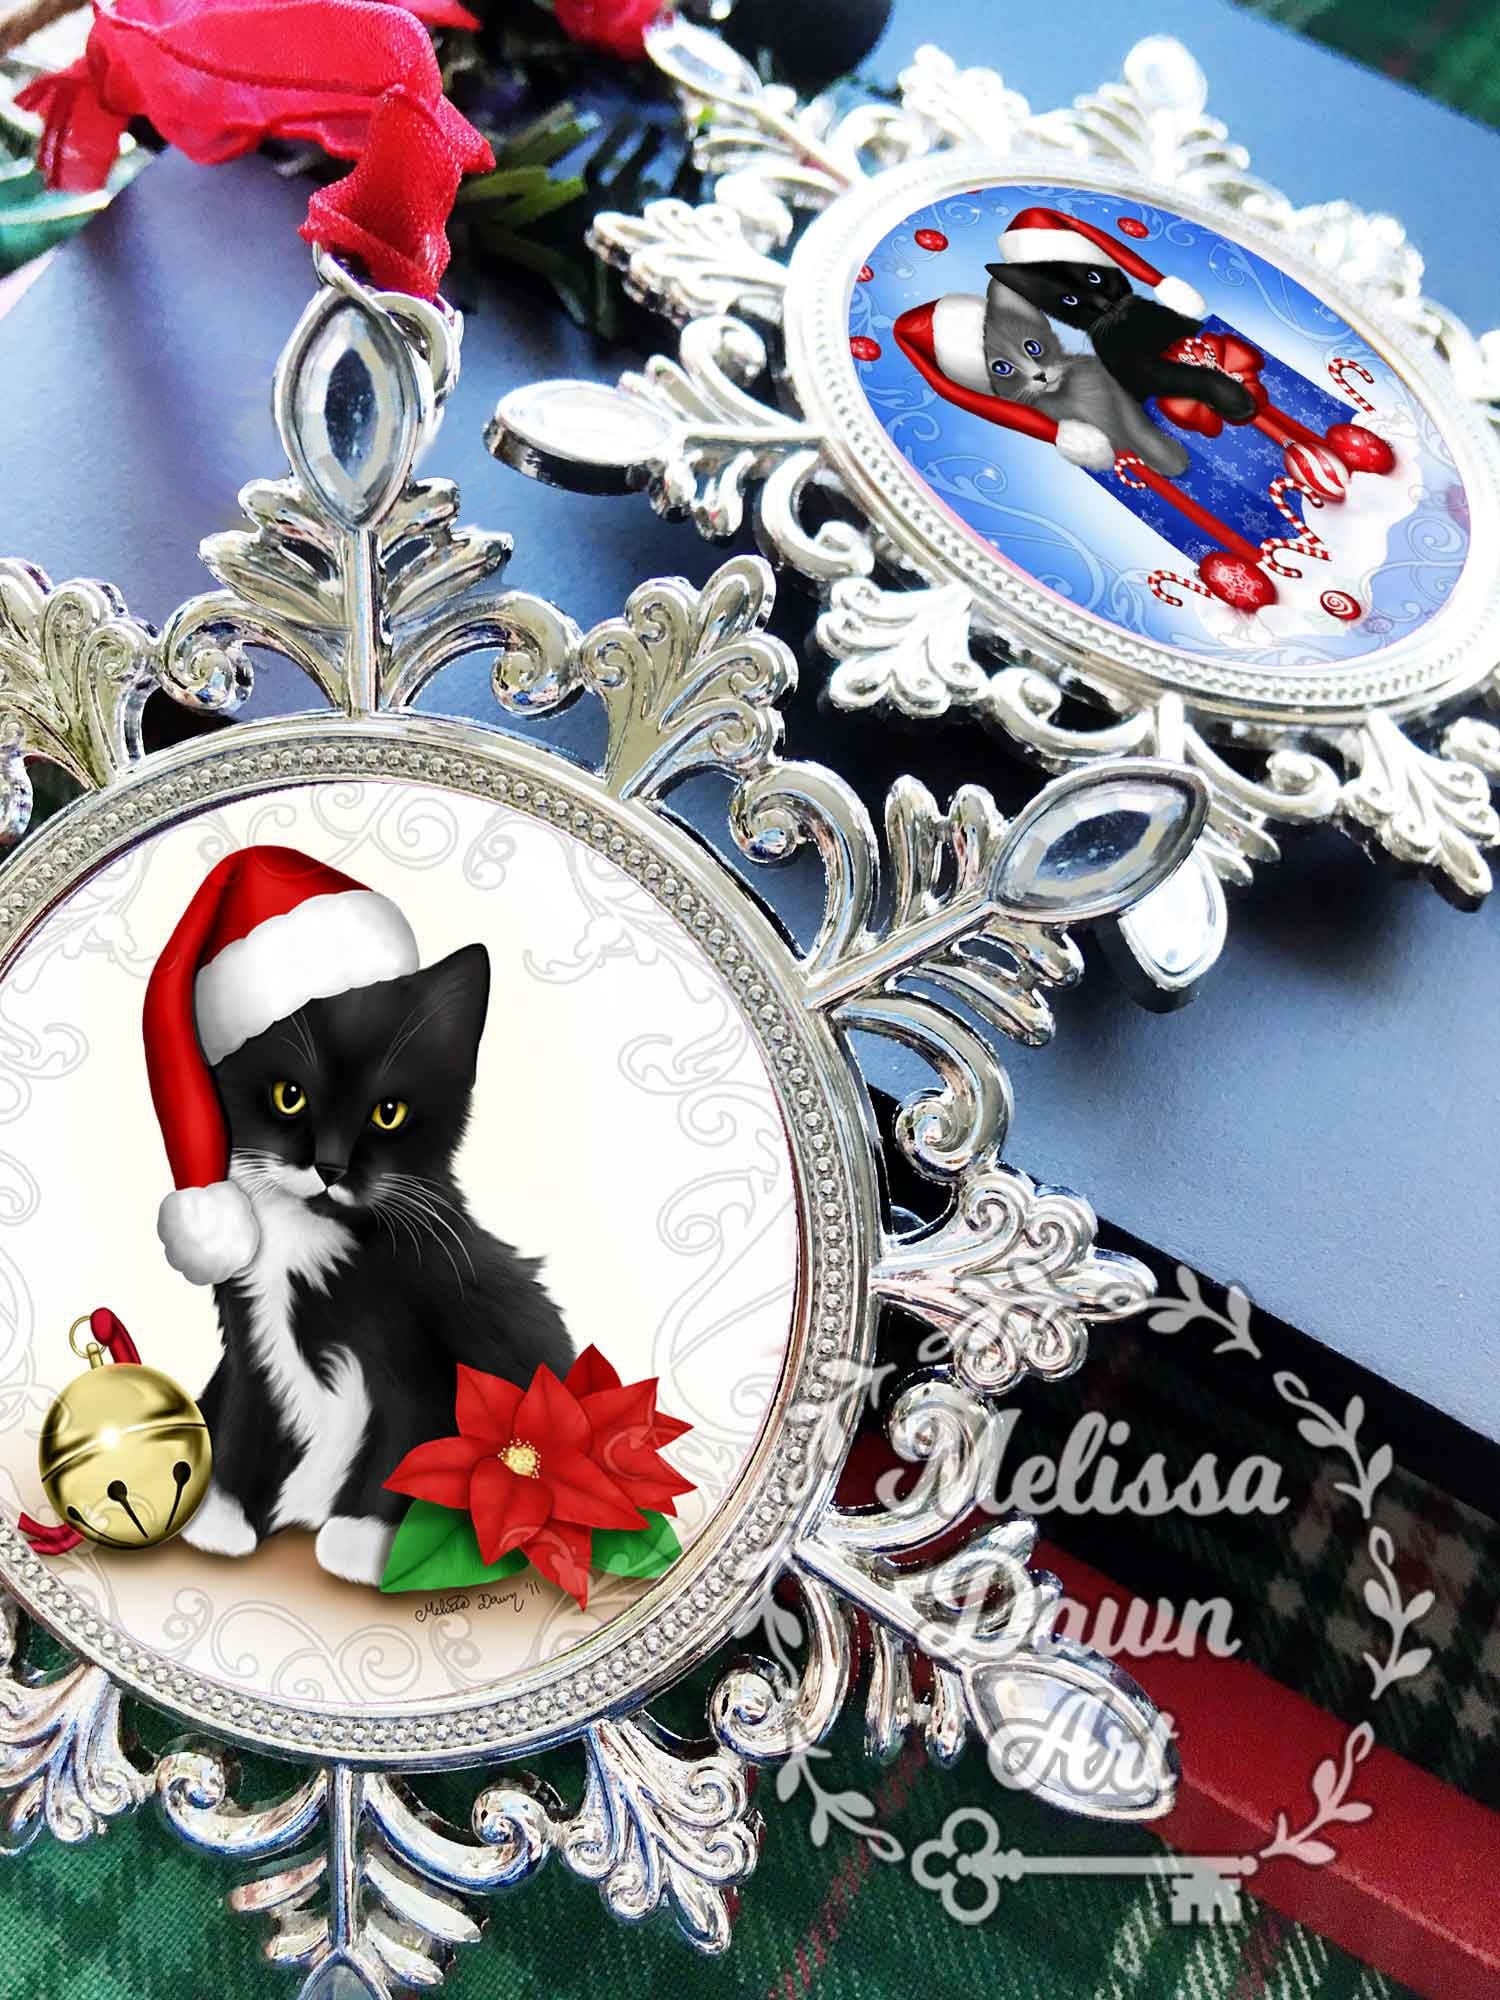 Russian Blue Ornament / Grey Cat Ornament / Personalized Cat Ornament / Cat Ornament / Cat Christmas Ornament / Russian Blue Cat